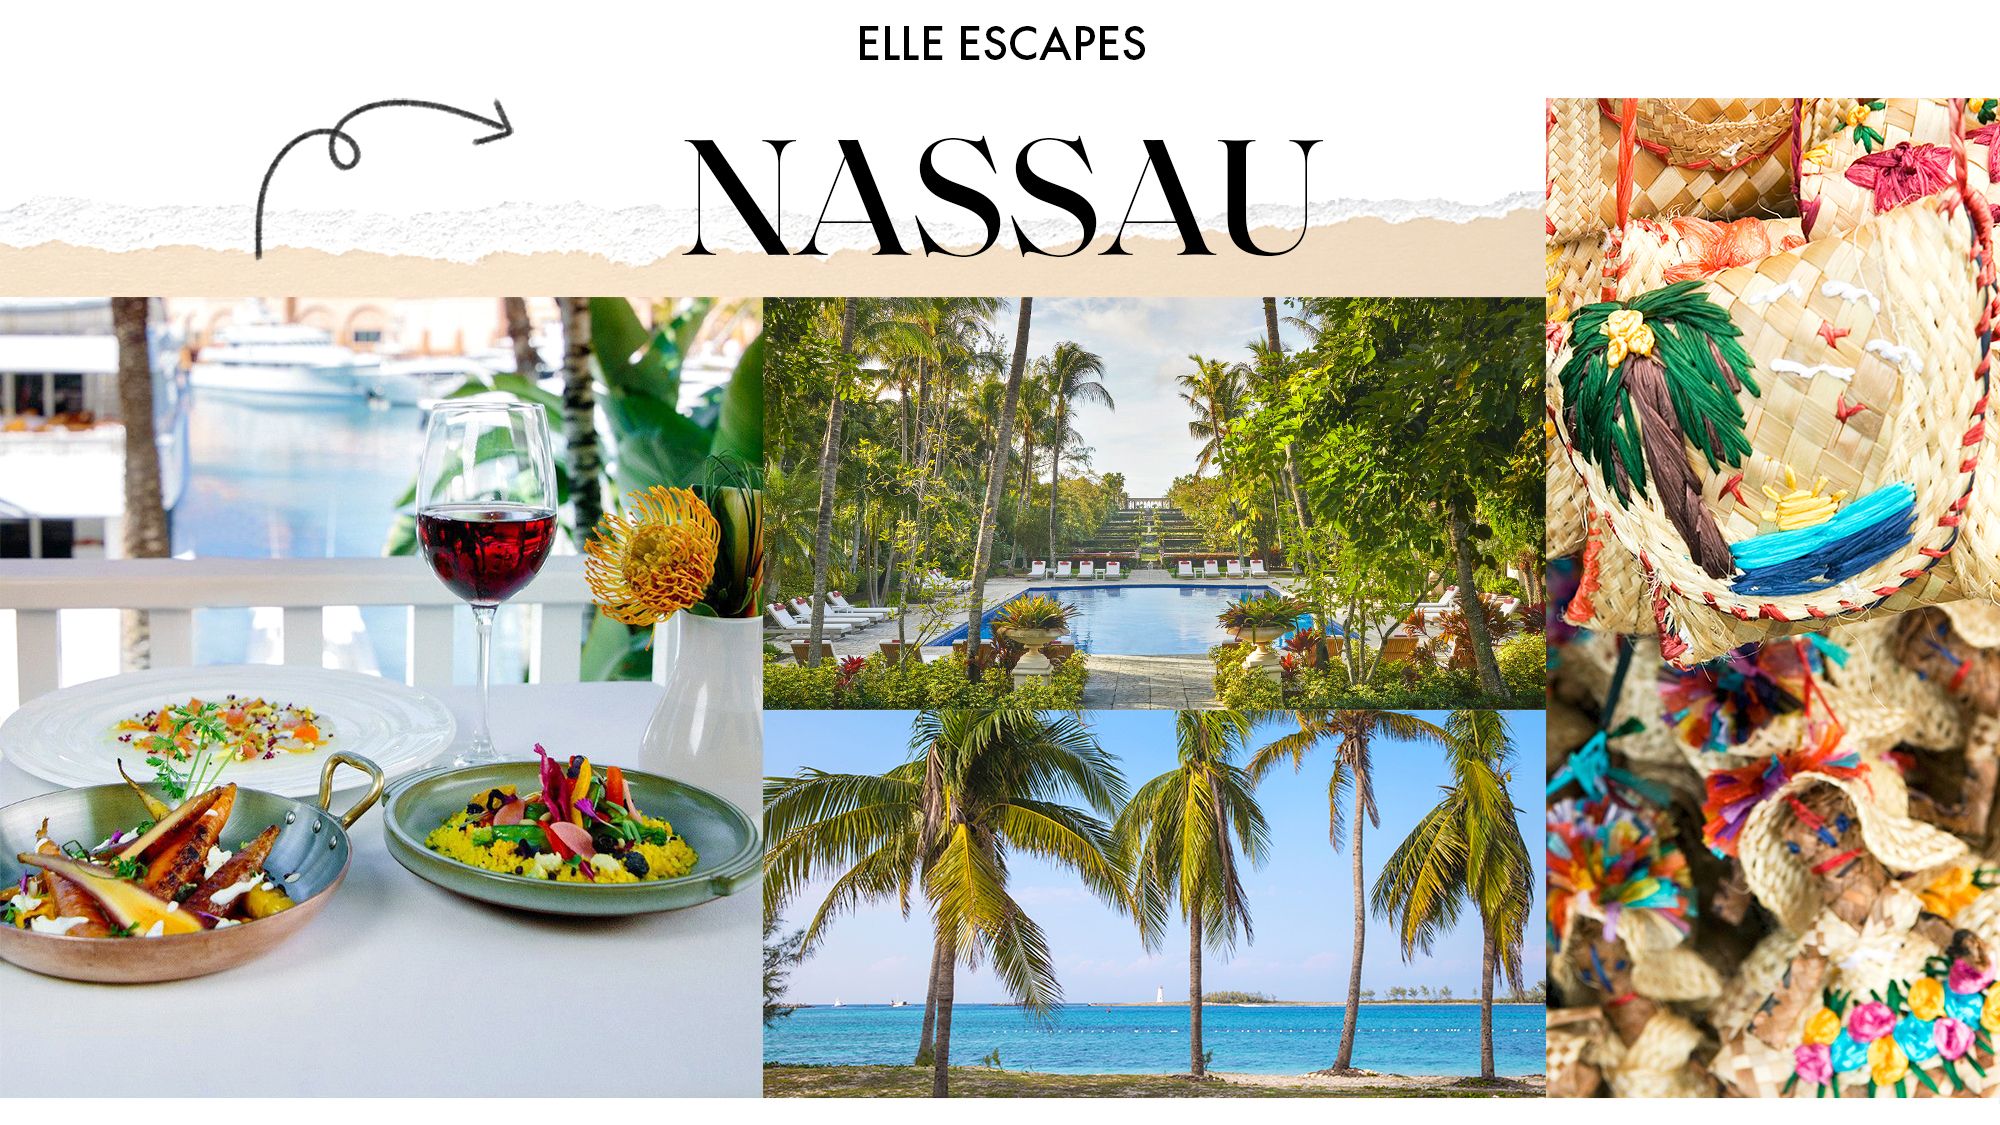 Nassau Travel Guide